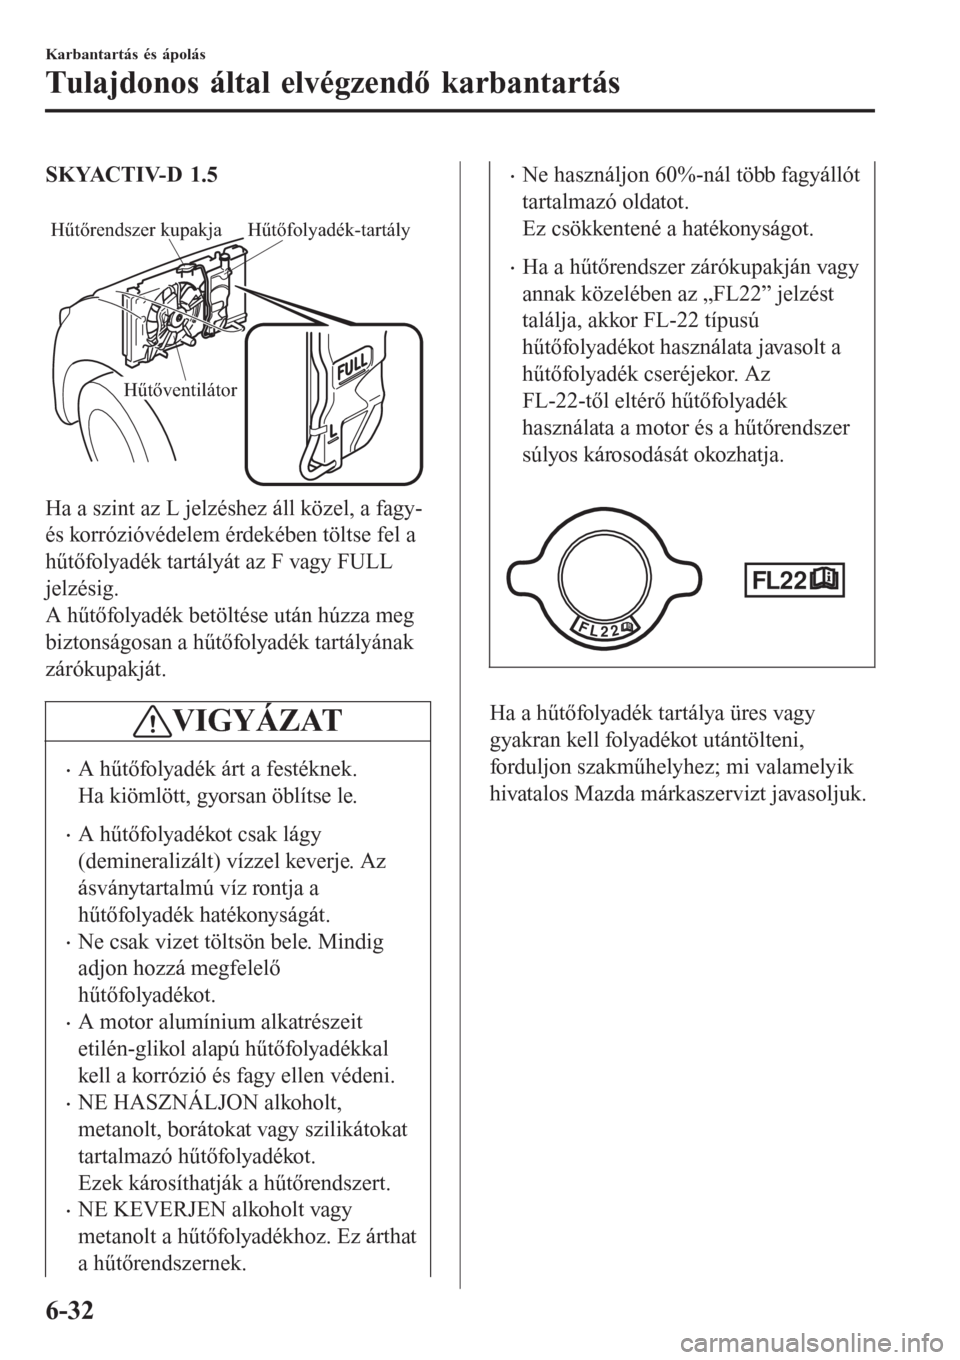 MAZDA MODEL CX-3 2016  Kezelési útmutató (in Hungarian) SKYACTIV-D 1.5
 
Hűtőrendszer kupakja Hűtőfolyadék-tartály
Hűtőventilátor
Ha a szint az L jelzéshez áll közel, a fagy-
és korrózióvédelem érdekében töltse fel a
hűtőfolyadék tart